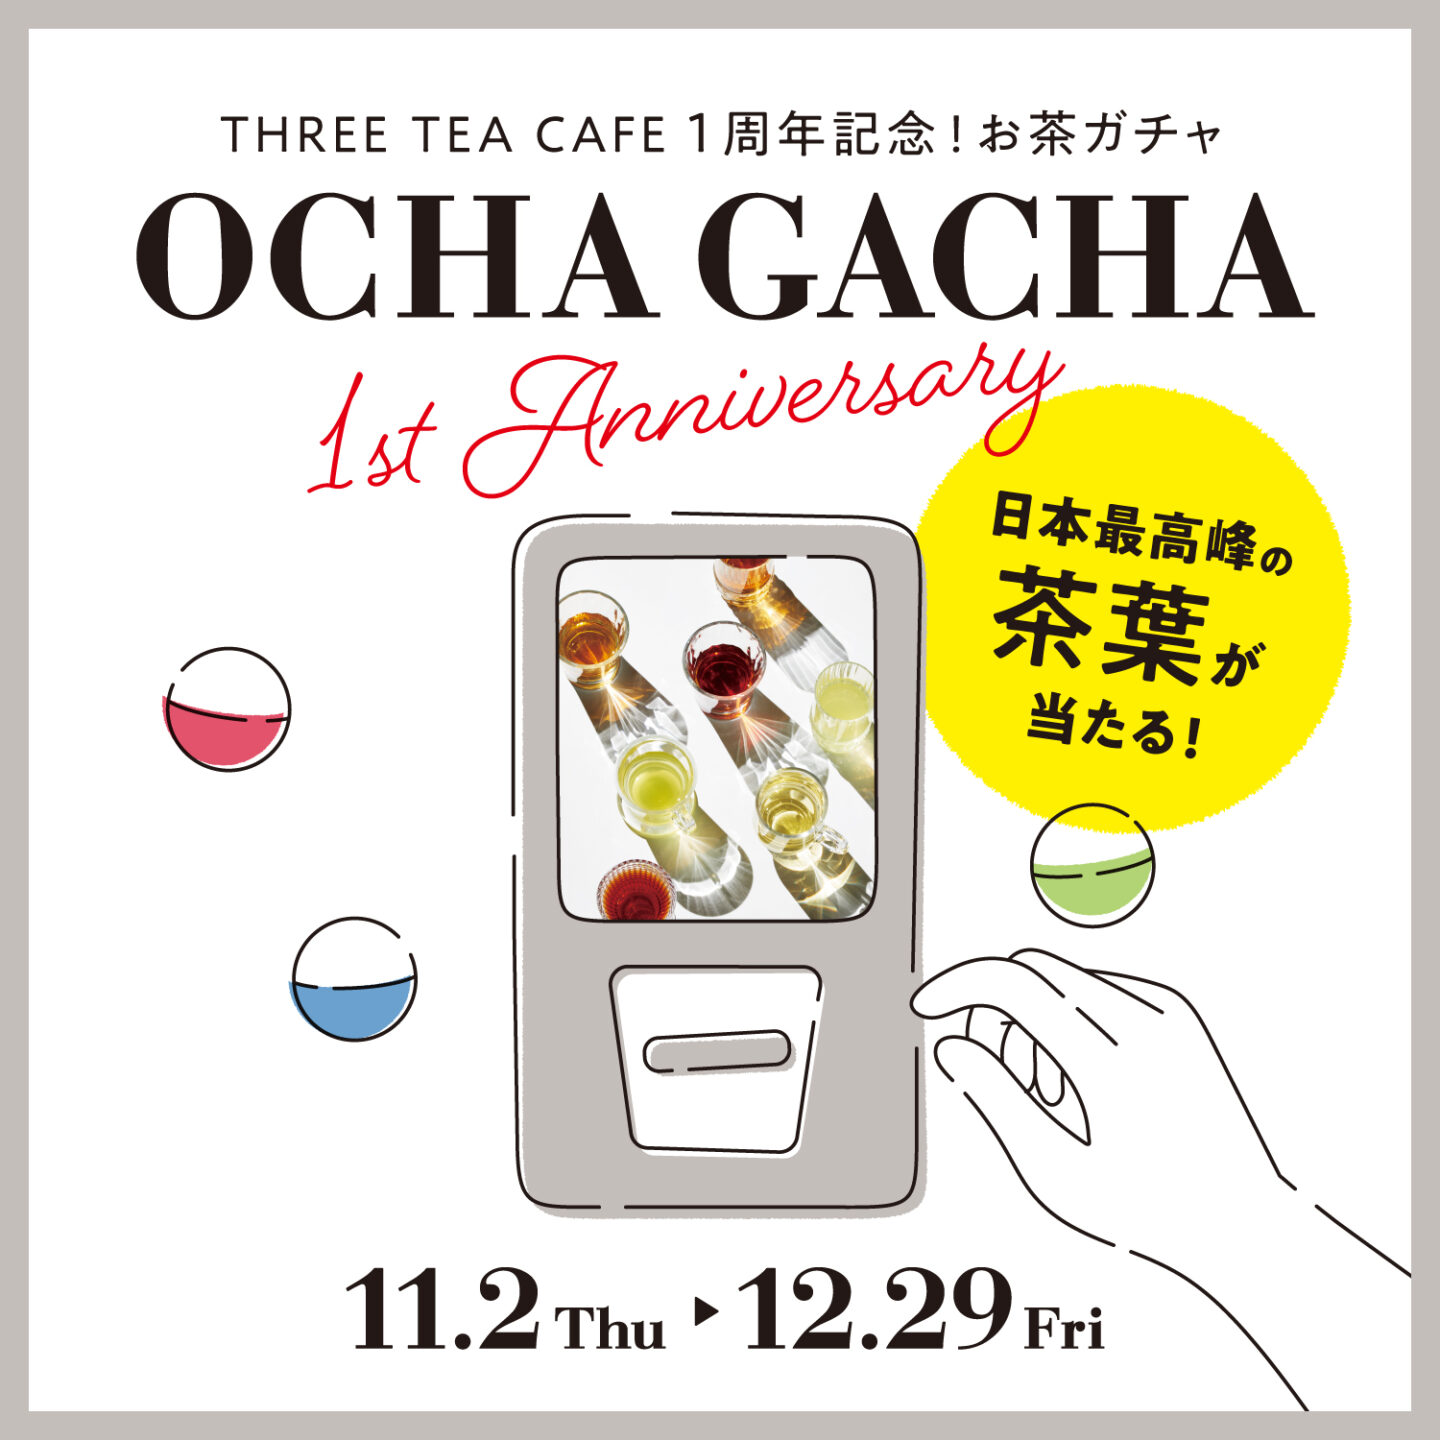 【1周年記念】THREE TEA CAFE トレインチ自由が丘店 1周年記念キャンペーン開催